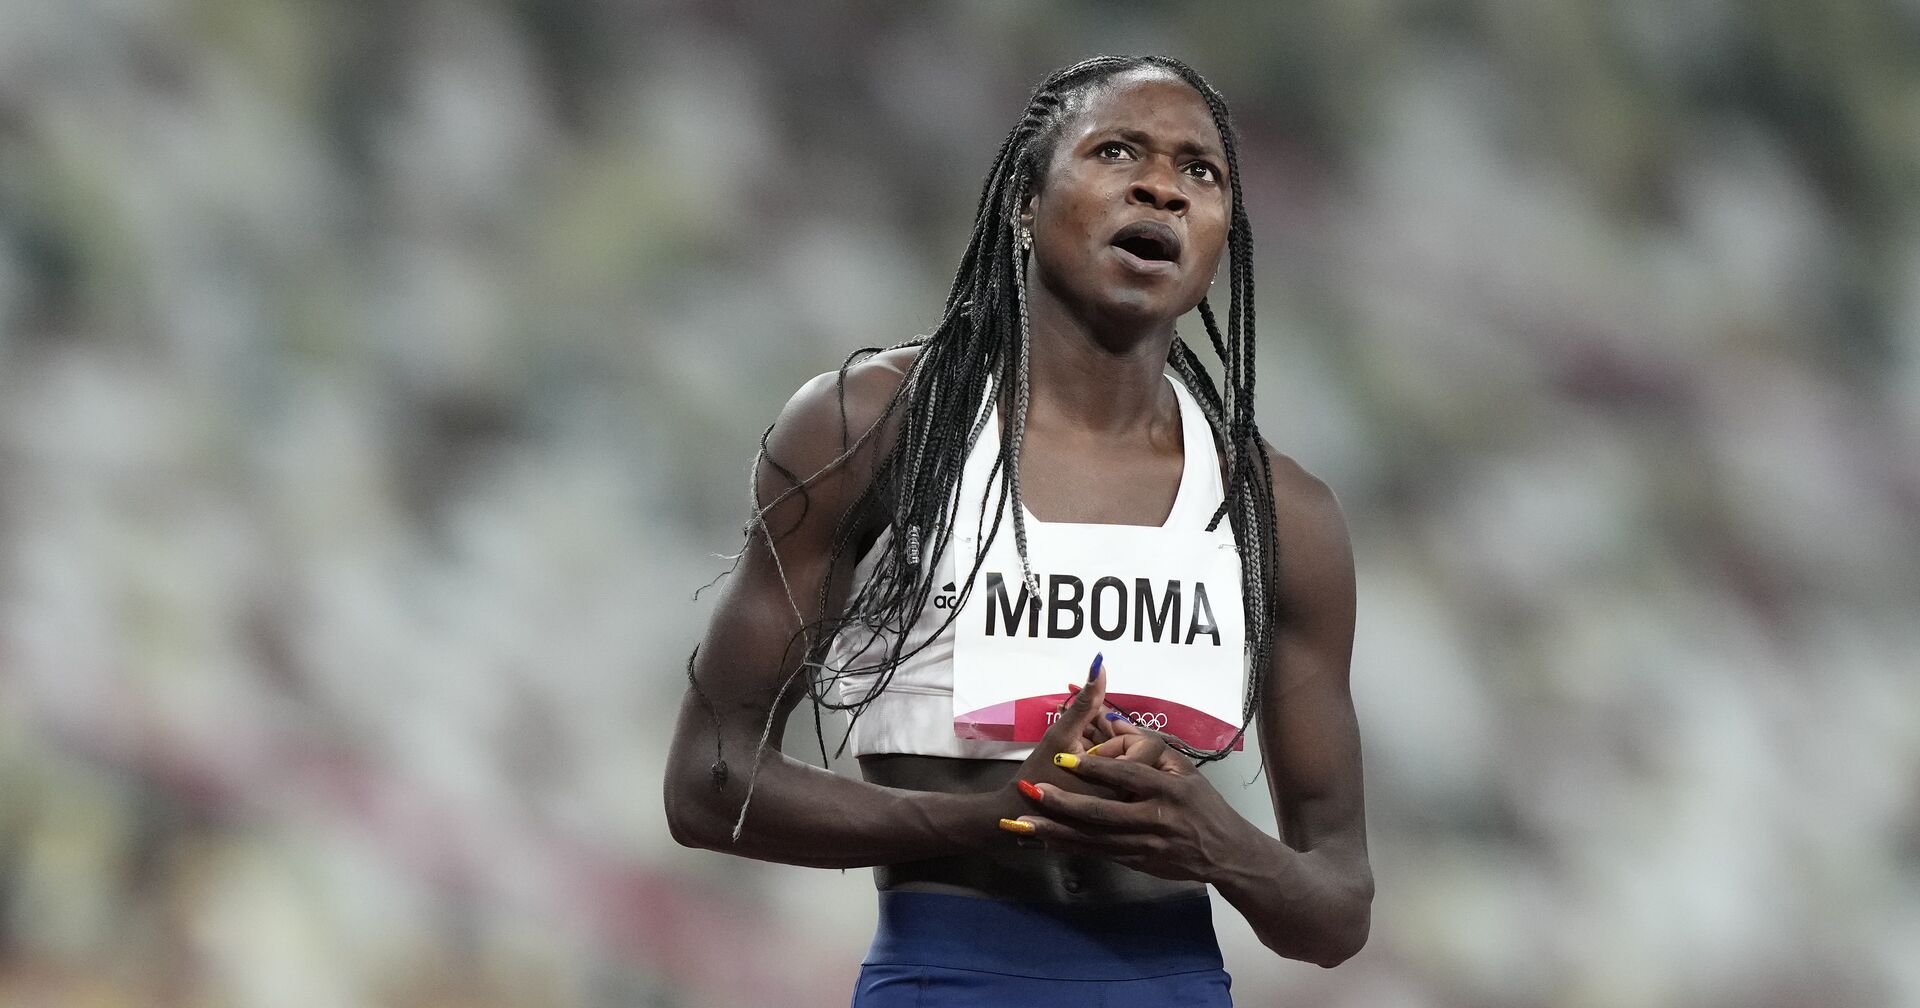 Кристин Мбома, Намибия, взяла серебро на 200 м Олимпийских игр в Токио - ИноСМИ, 1920, 05.08.2021